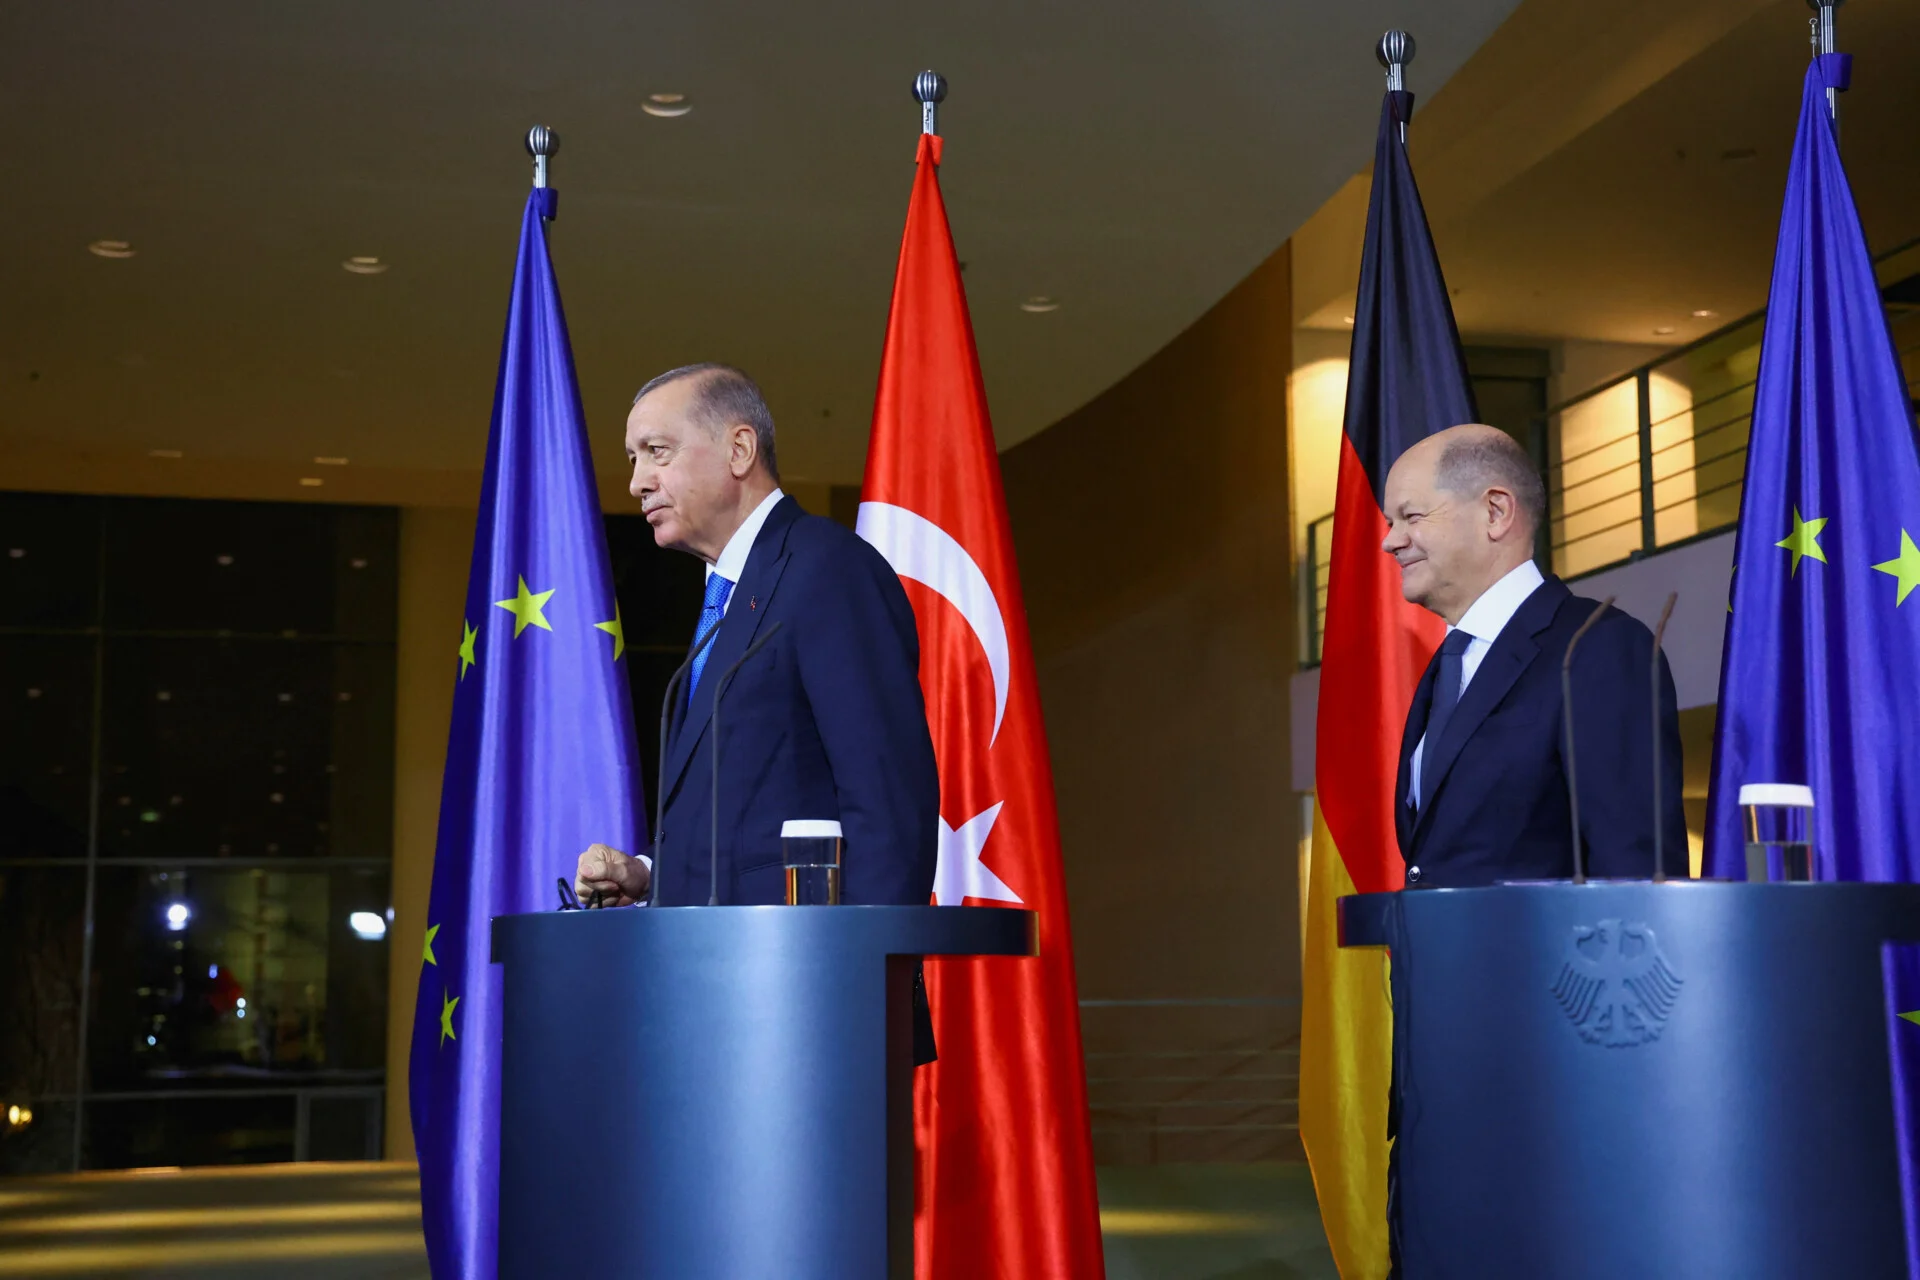 Κόμμα-δούρειος ίππος του Ερντογάν, φιλοδοξεί να μπει στο ευρωκοινοβούλιο και στη γερμανική βουλή